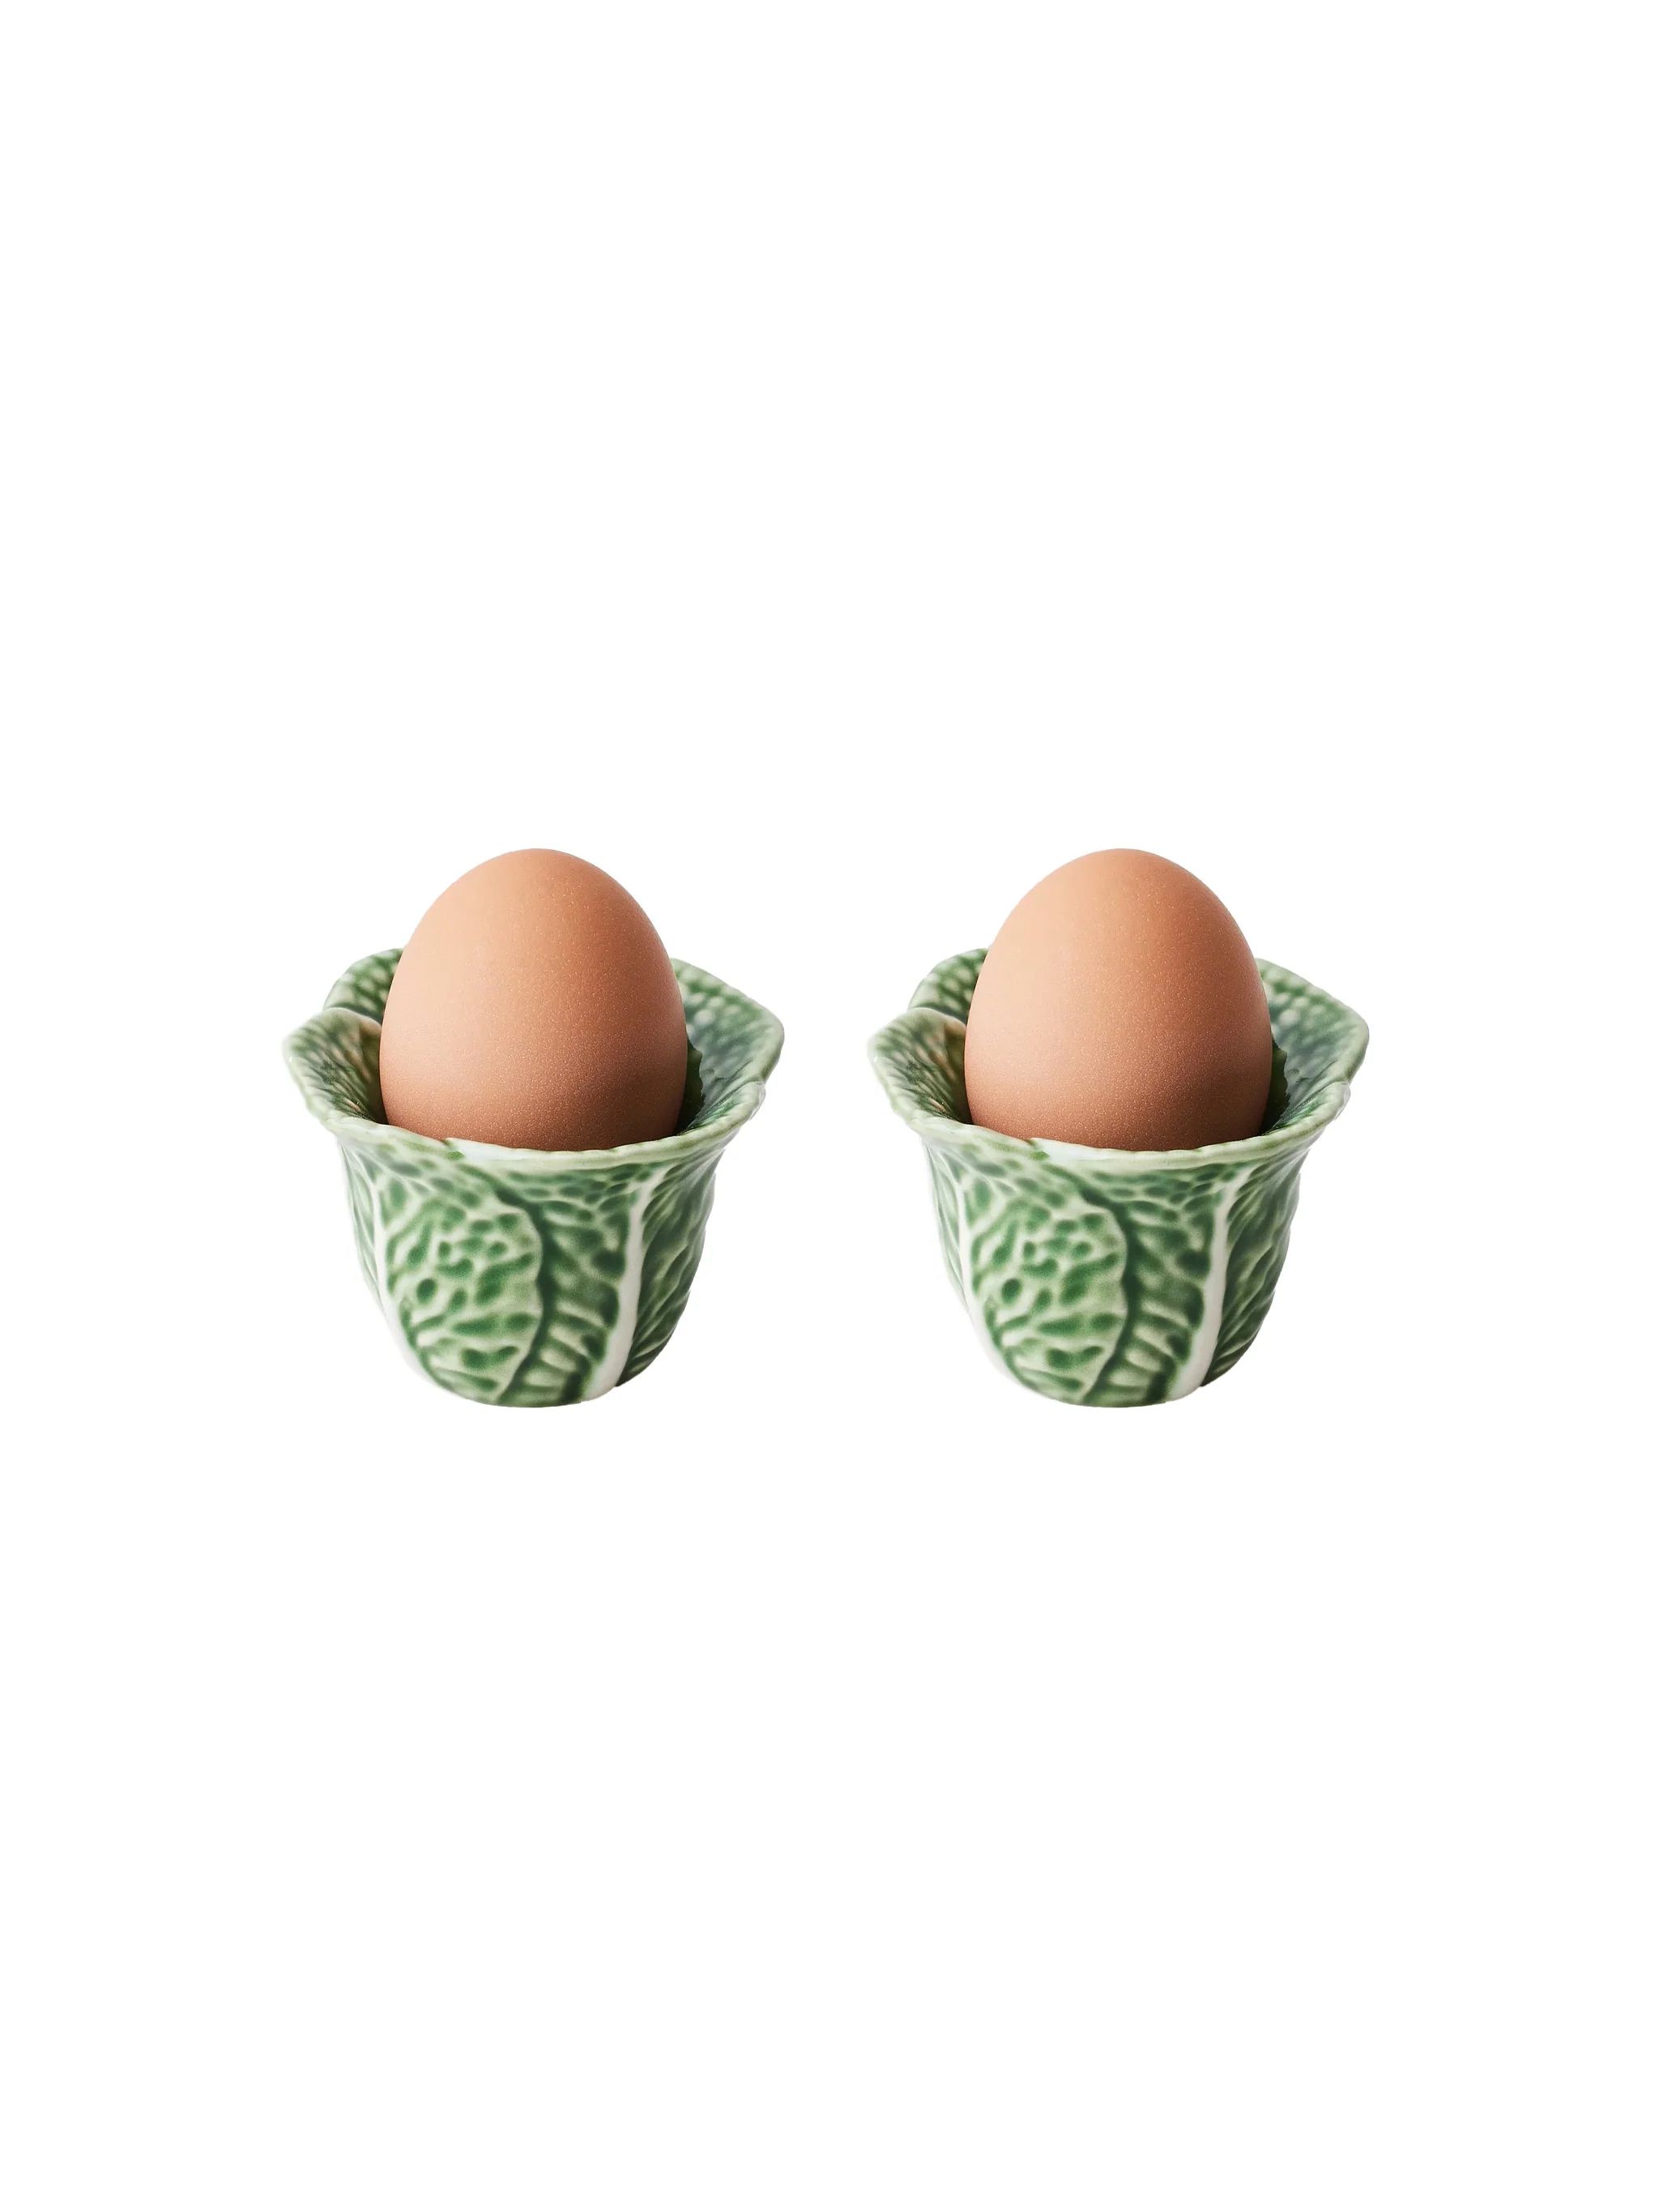 Bordallo Pinheiro Cabbage Egg Cups | Weston Table